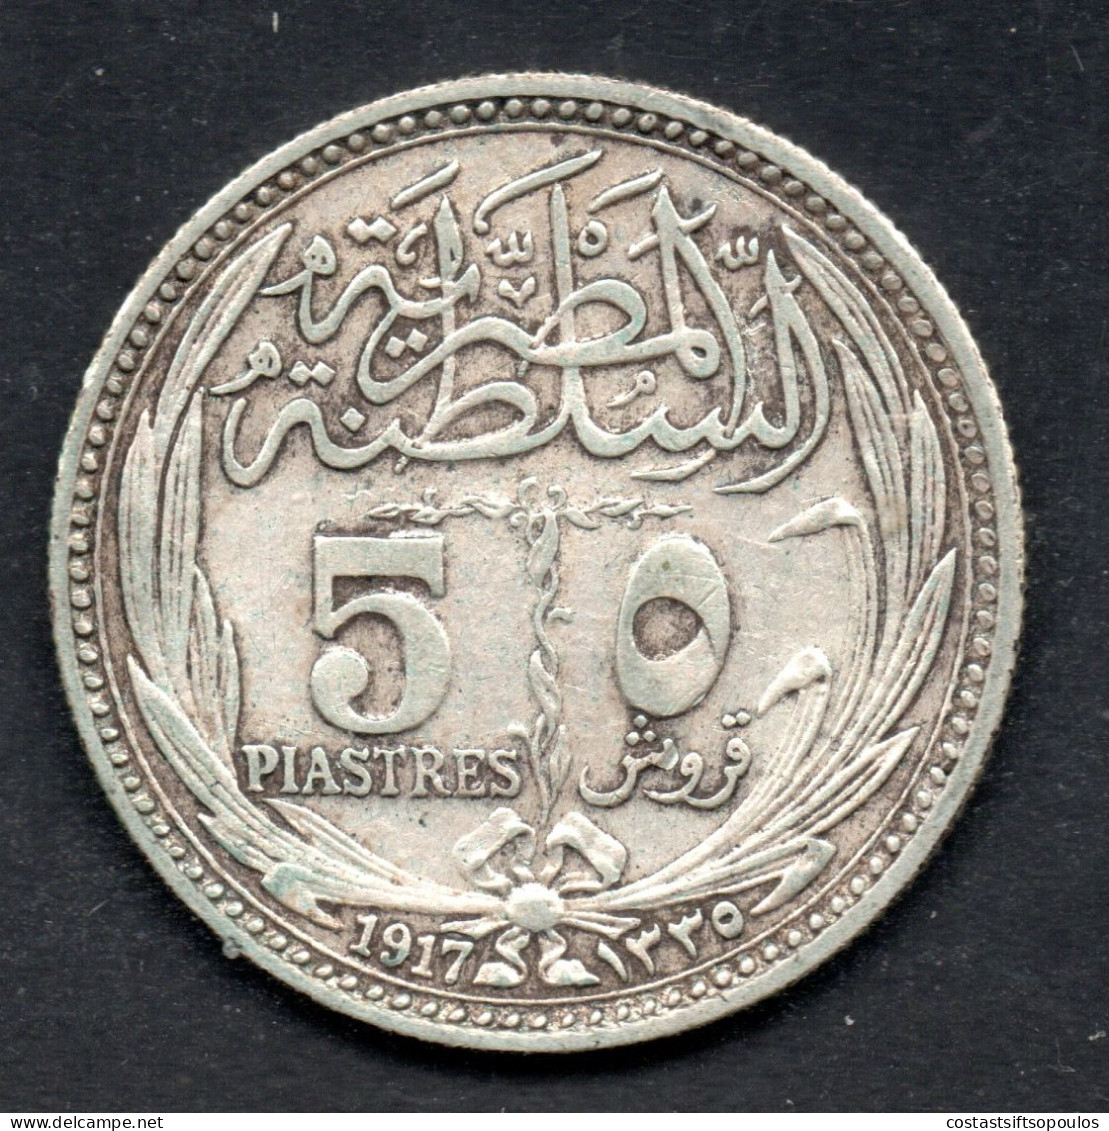 3106. EGYPT 1917 5 PIASTER VERY NICE SILVER COIN - Egipto